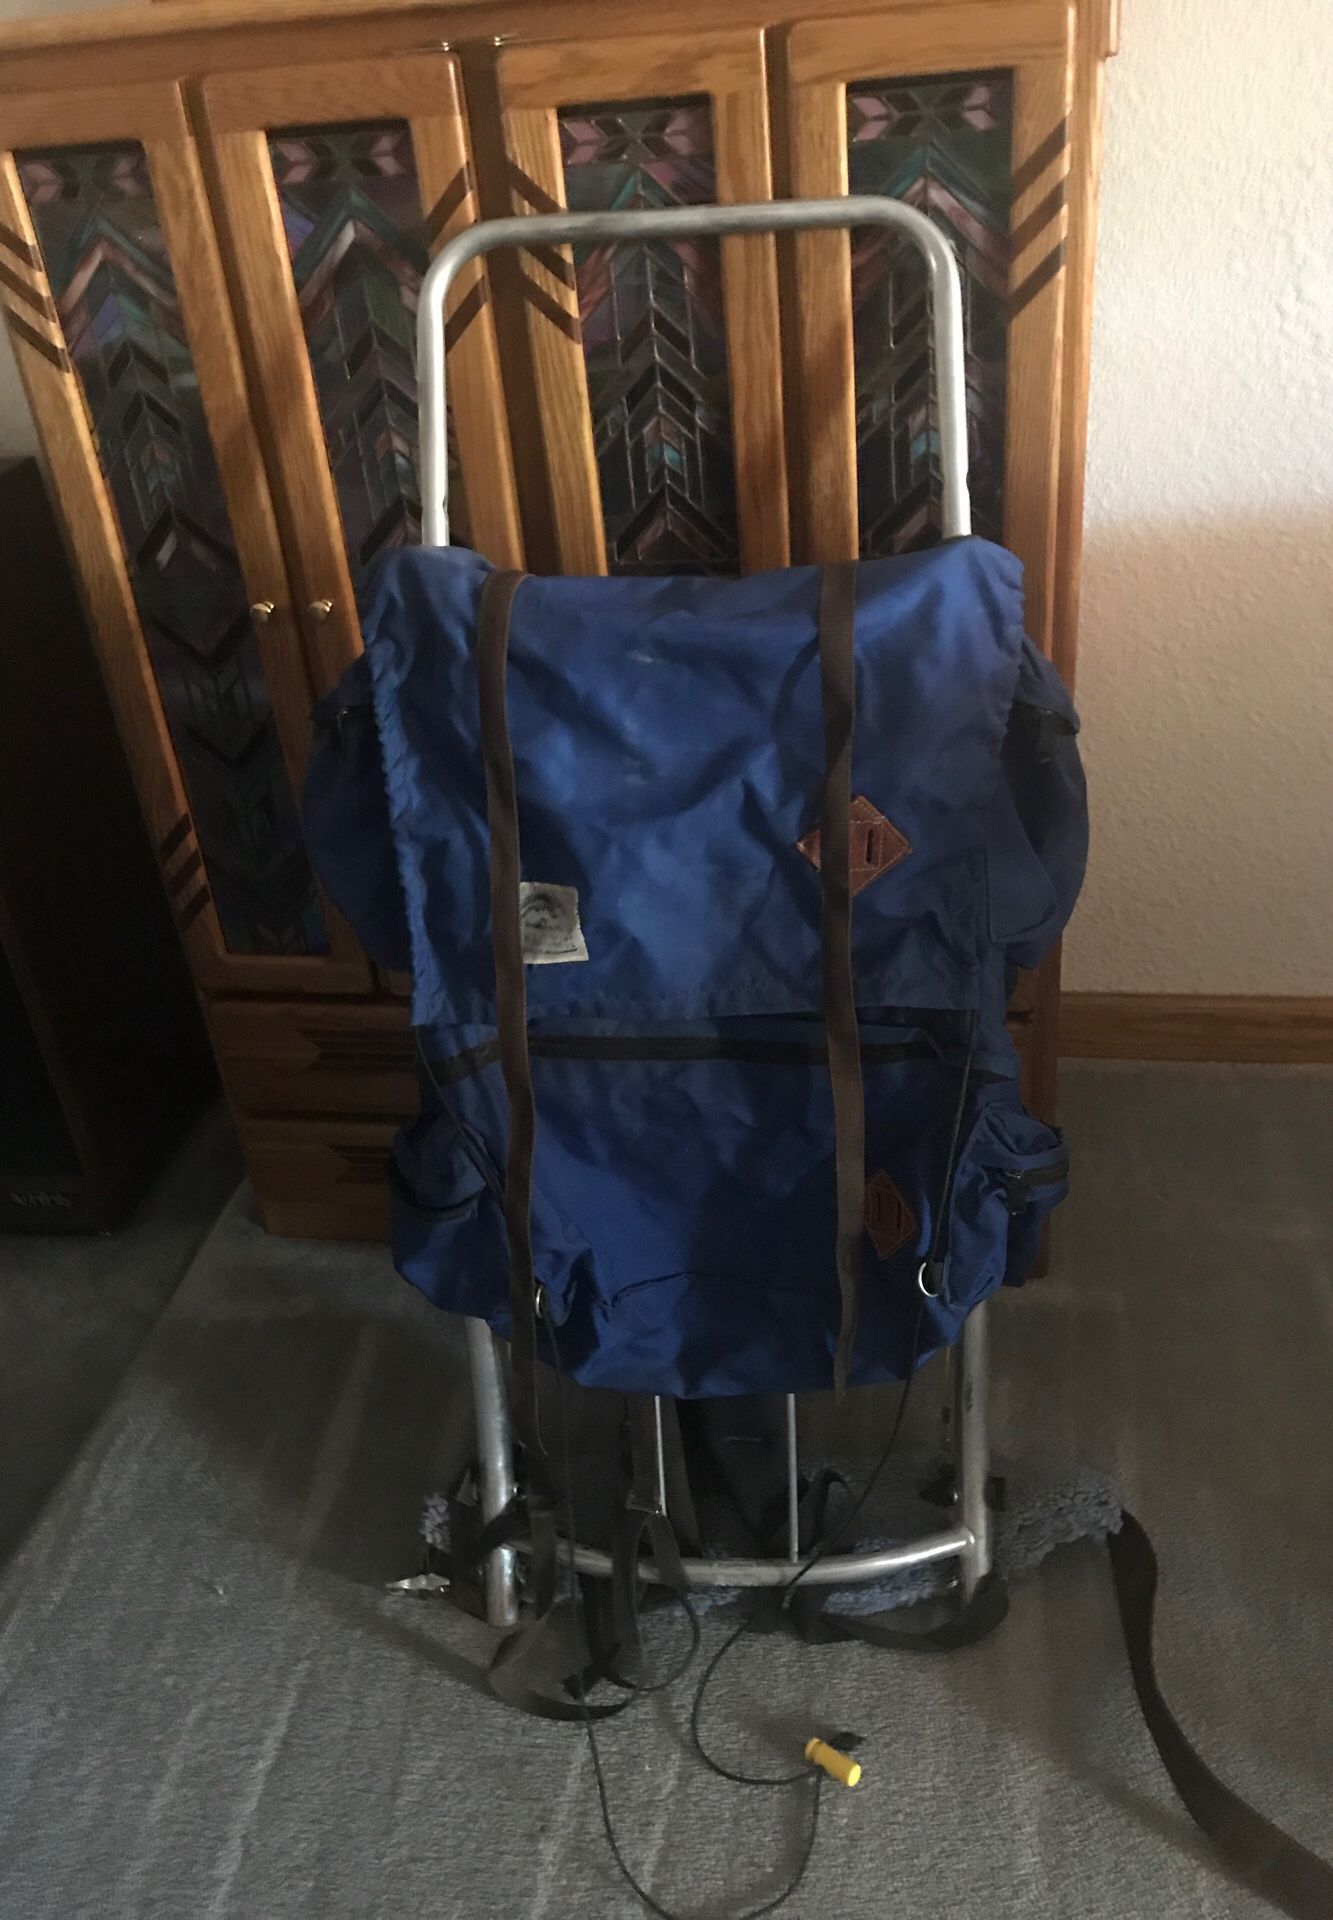 External frame hiking backpack